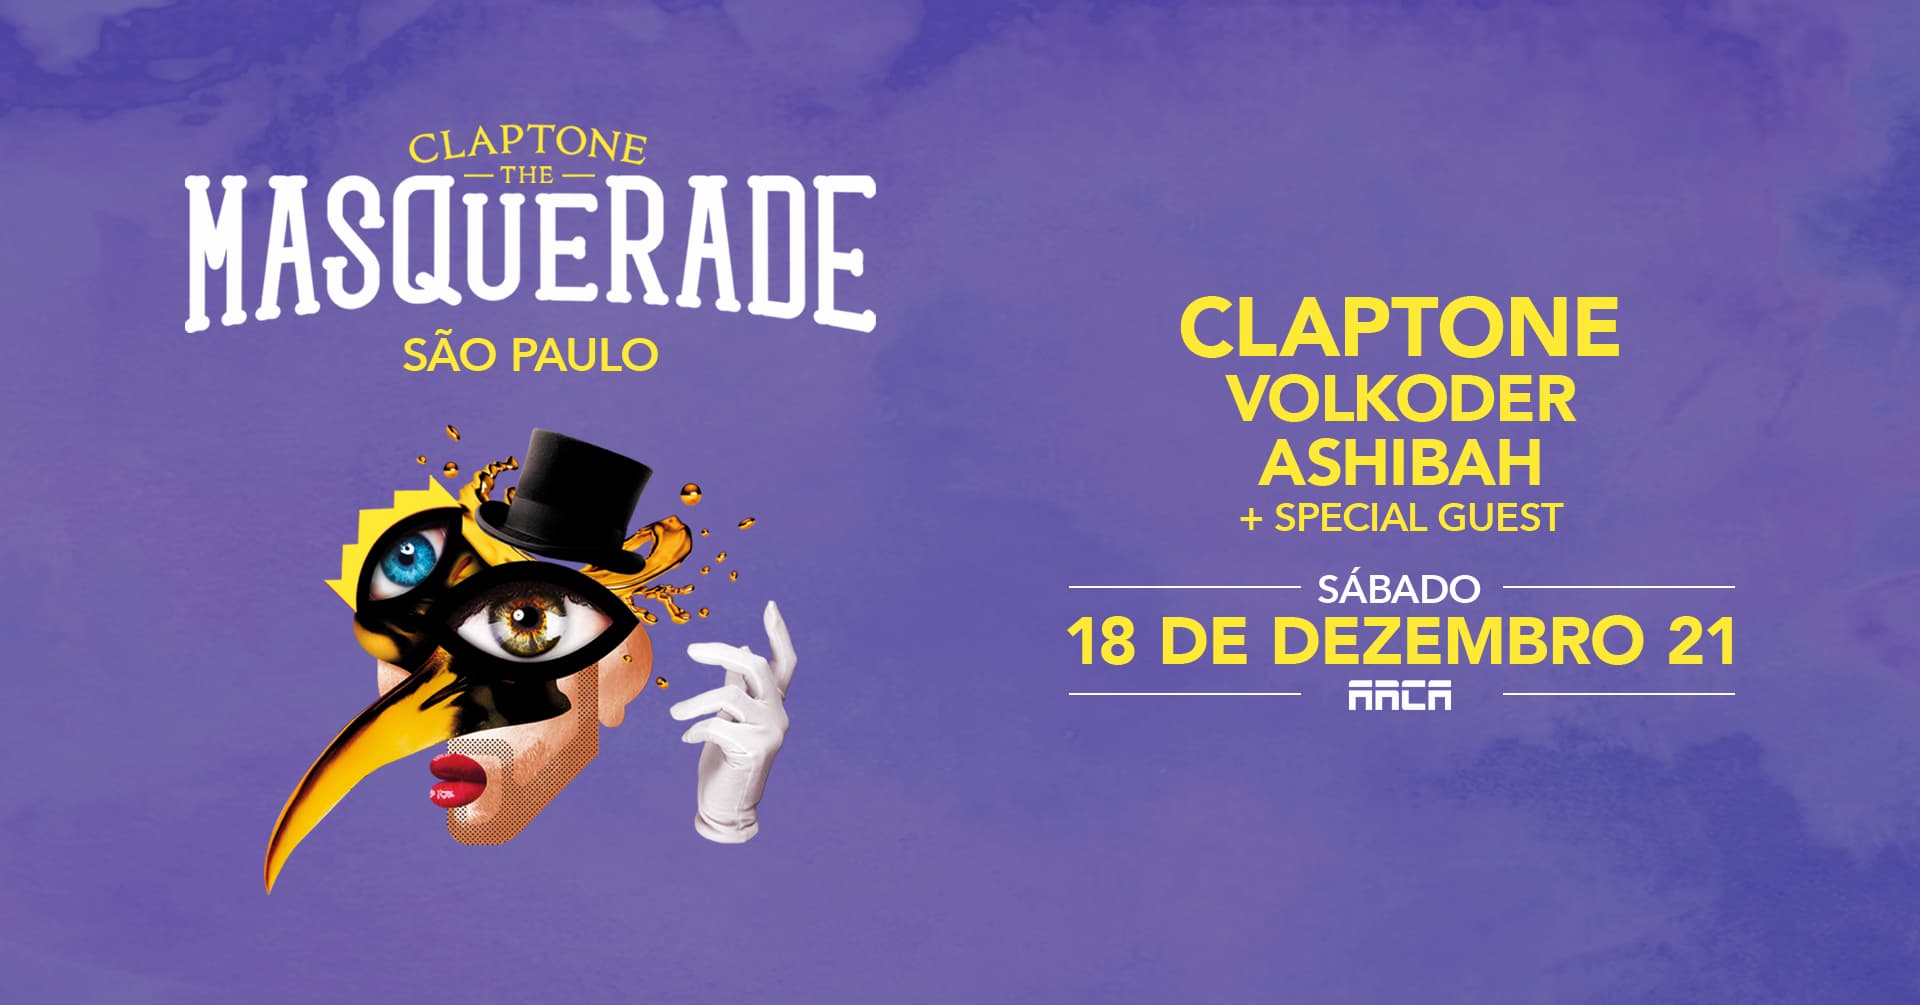 The Masquerade de Claptone retorna para São Paulo em dezembro